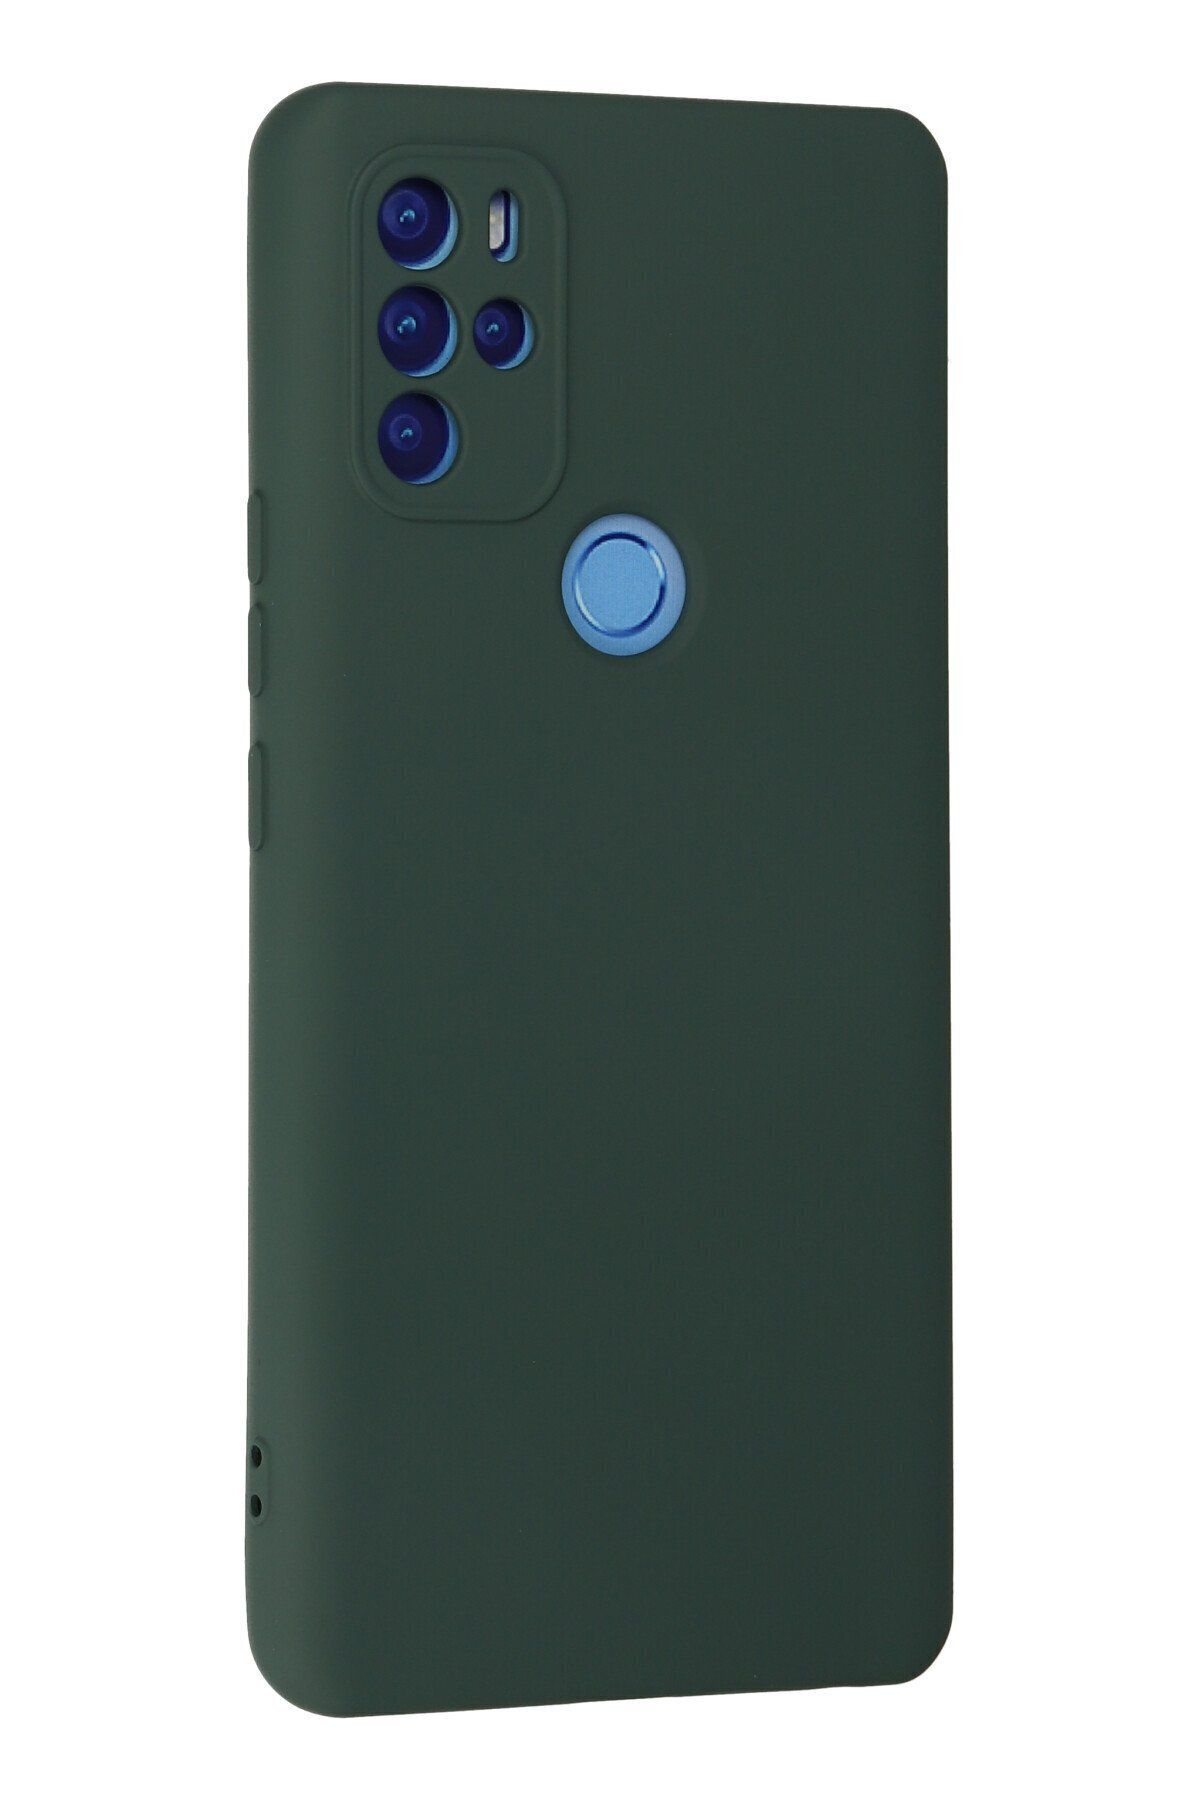 NewFace Omix X500 - Soft Dokulu İç Kısmı Süet Lansman Kılıf - Koyu Yeşil Renk içi kadife Kapak